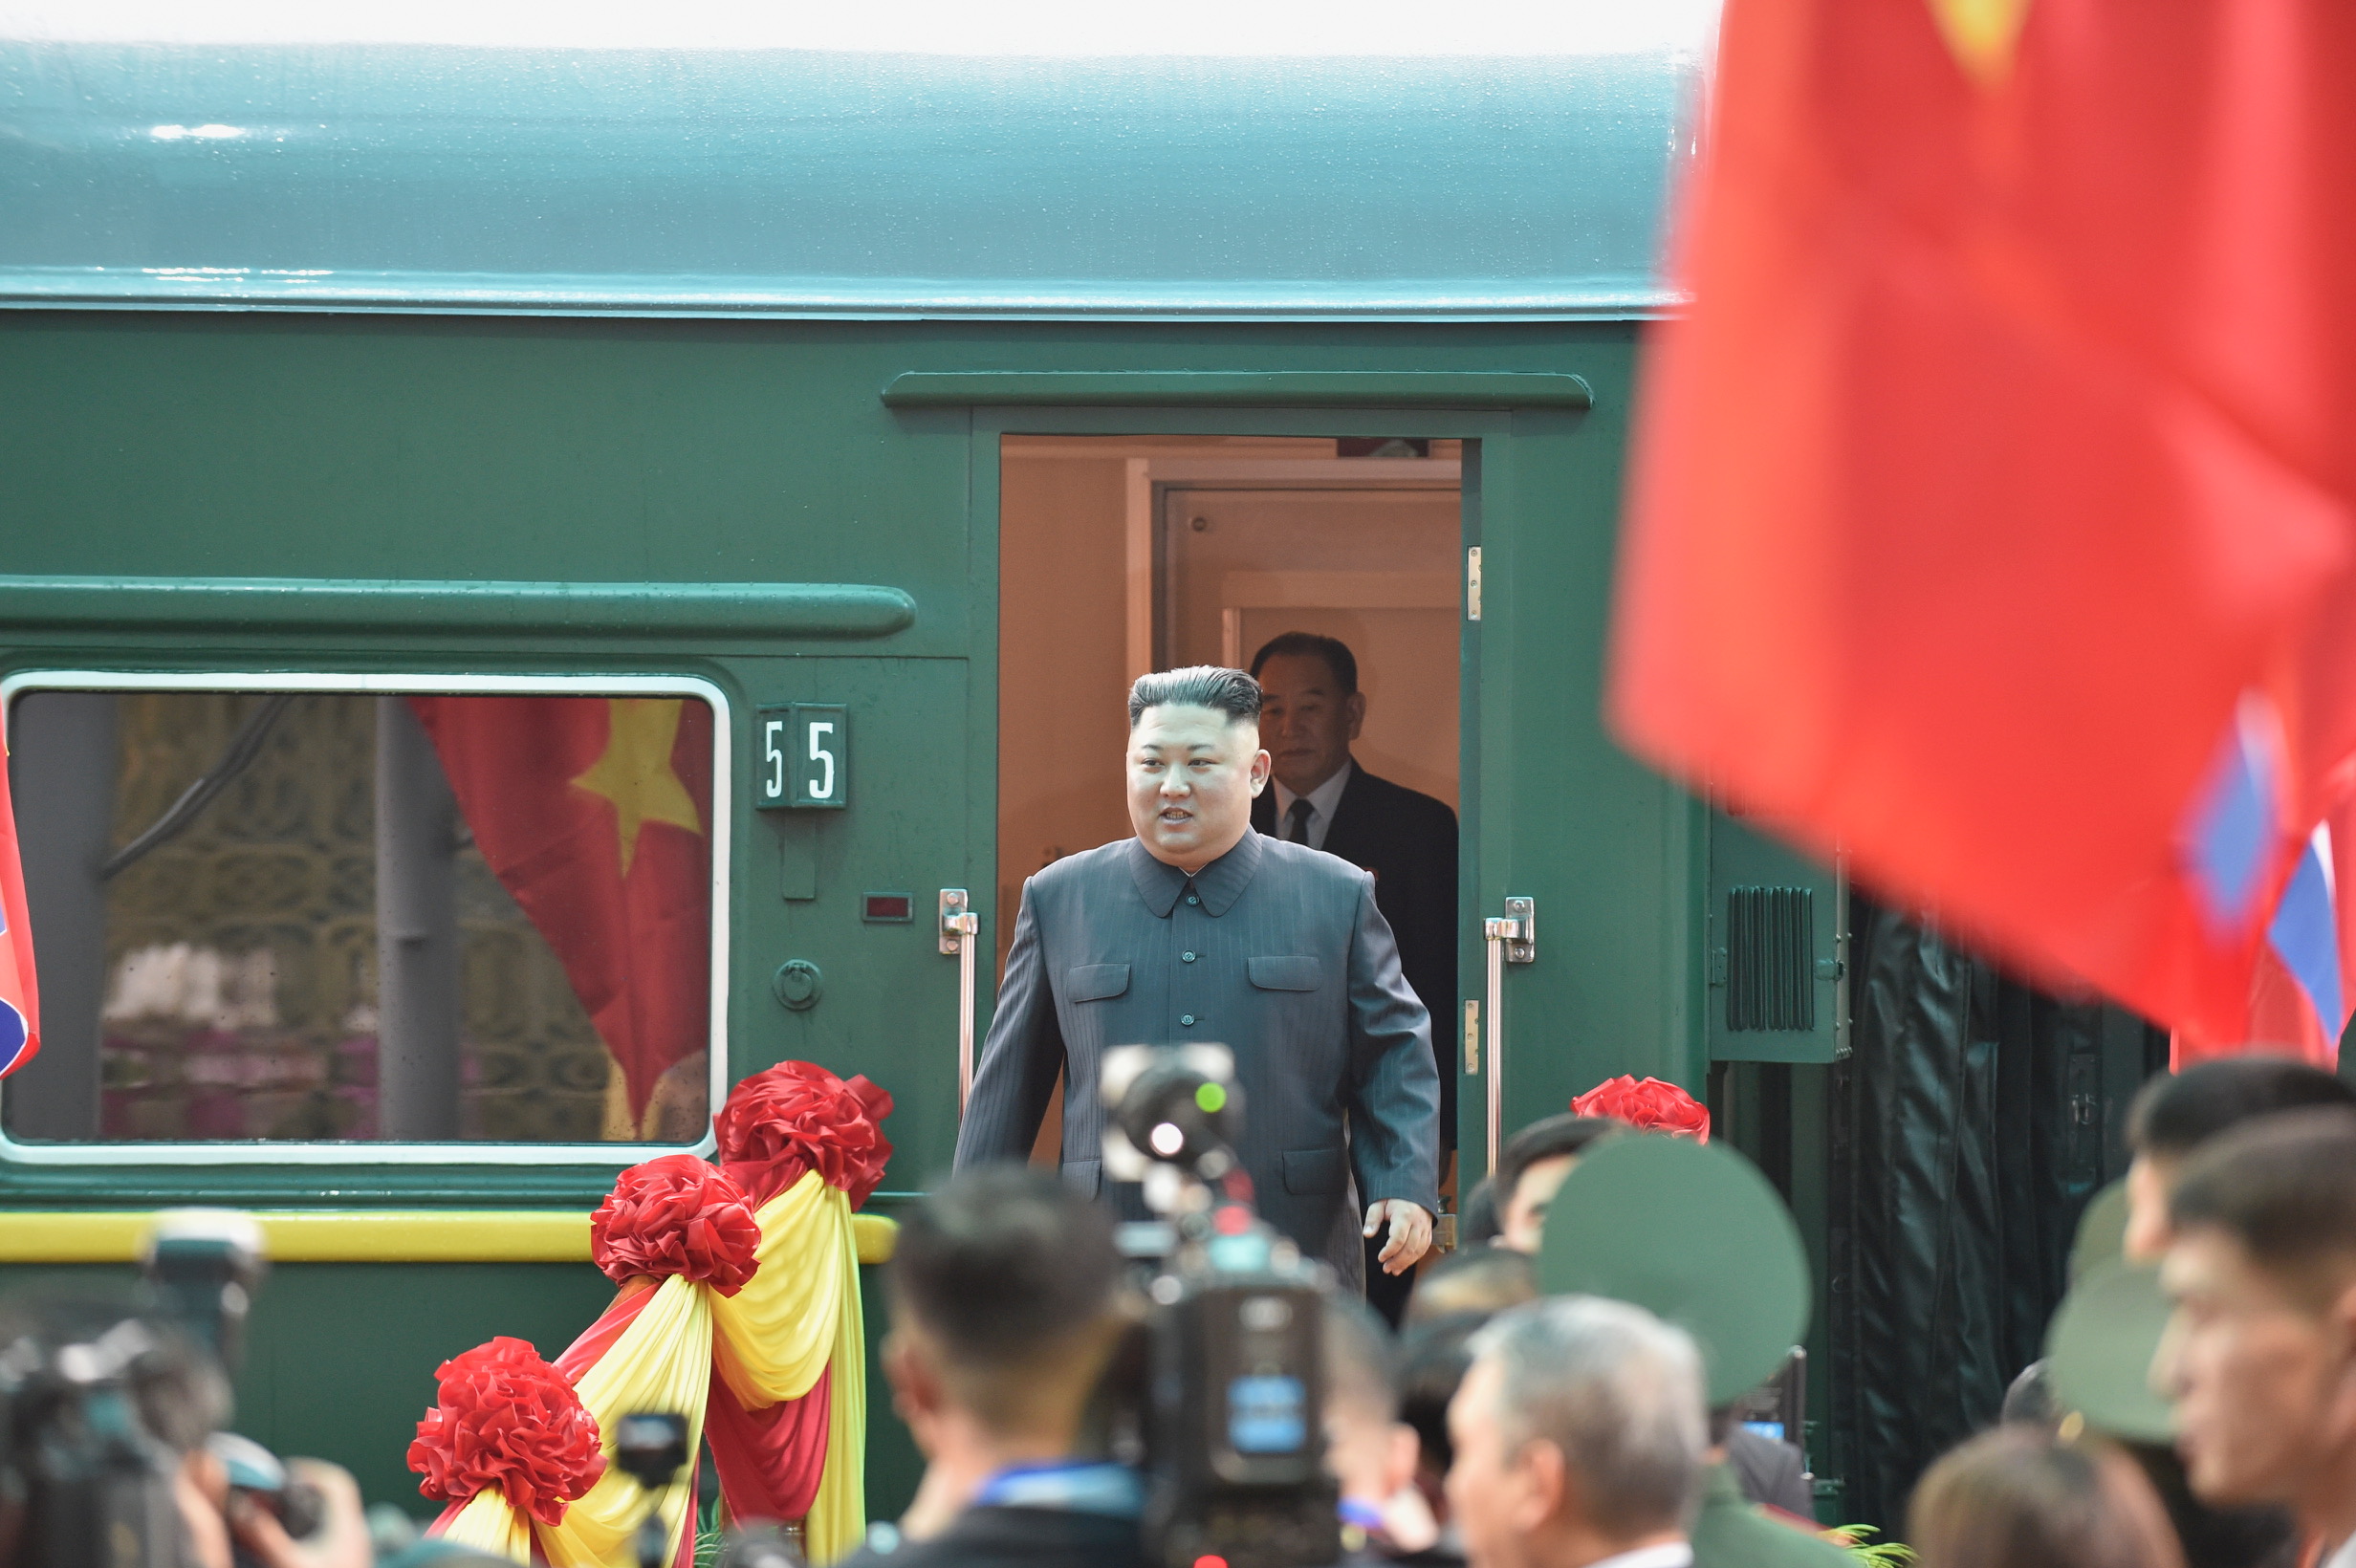 Đường sắt Việt Nam vinh dự đón Chủ tịch Kim Jong Un tới Việt Nam dự Hội nghị Thượng đỉnh Mỹ - Triều lần thứ 2